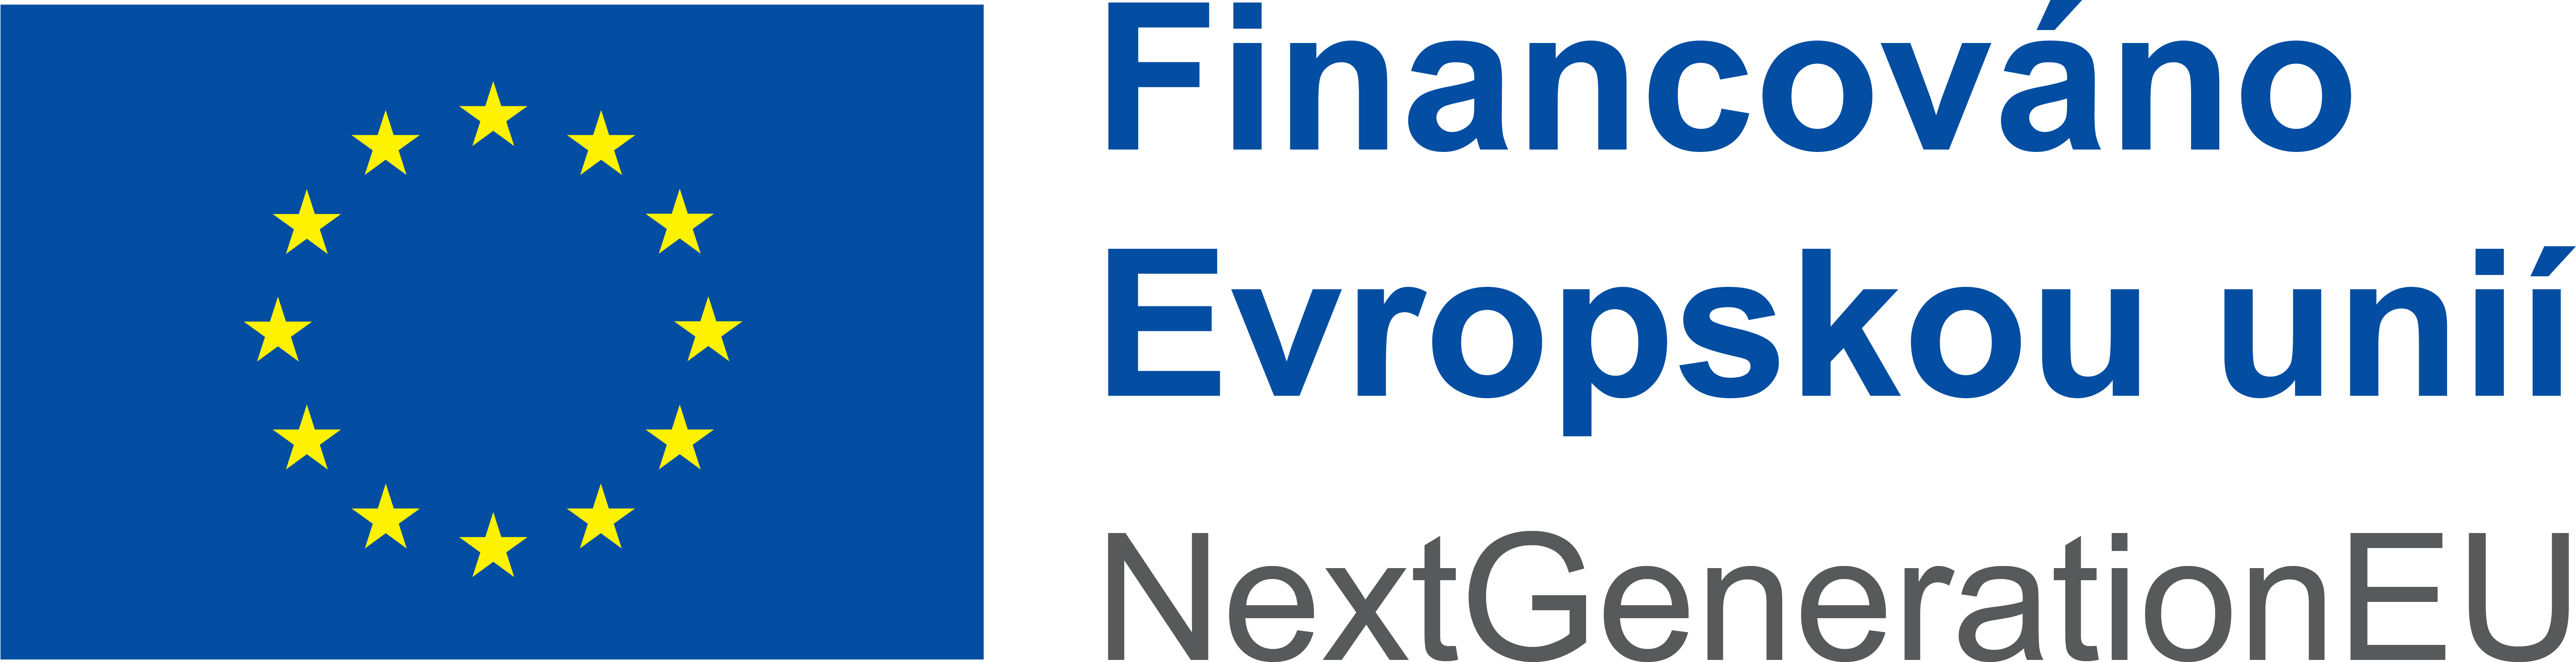 Logo - Financováno Evropskou unií, NextGeneration